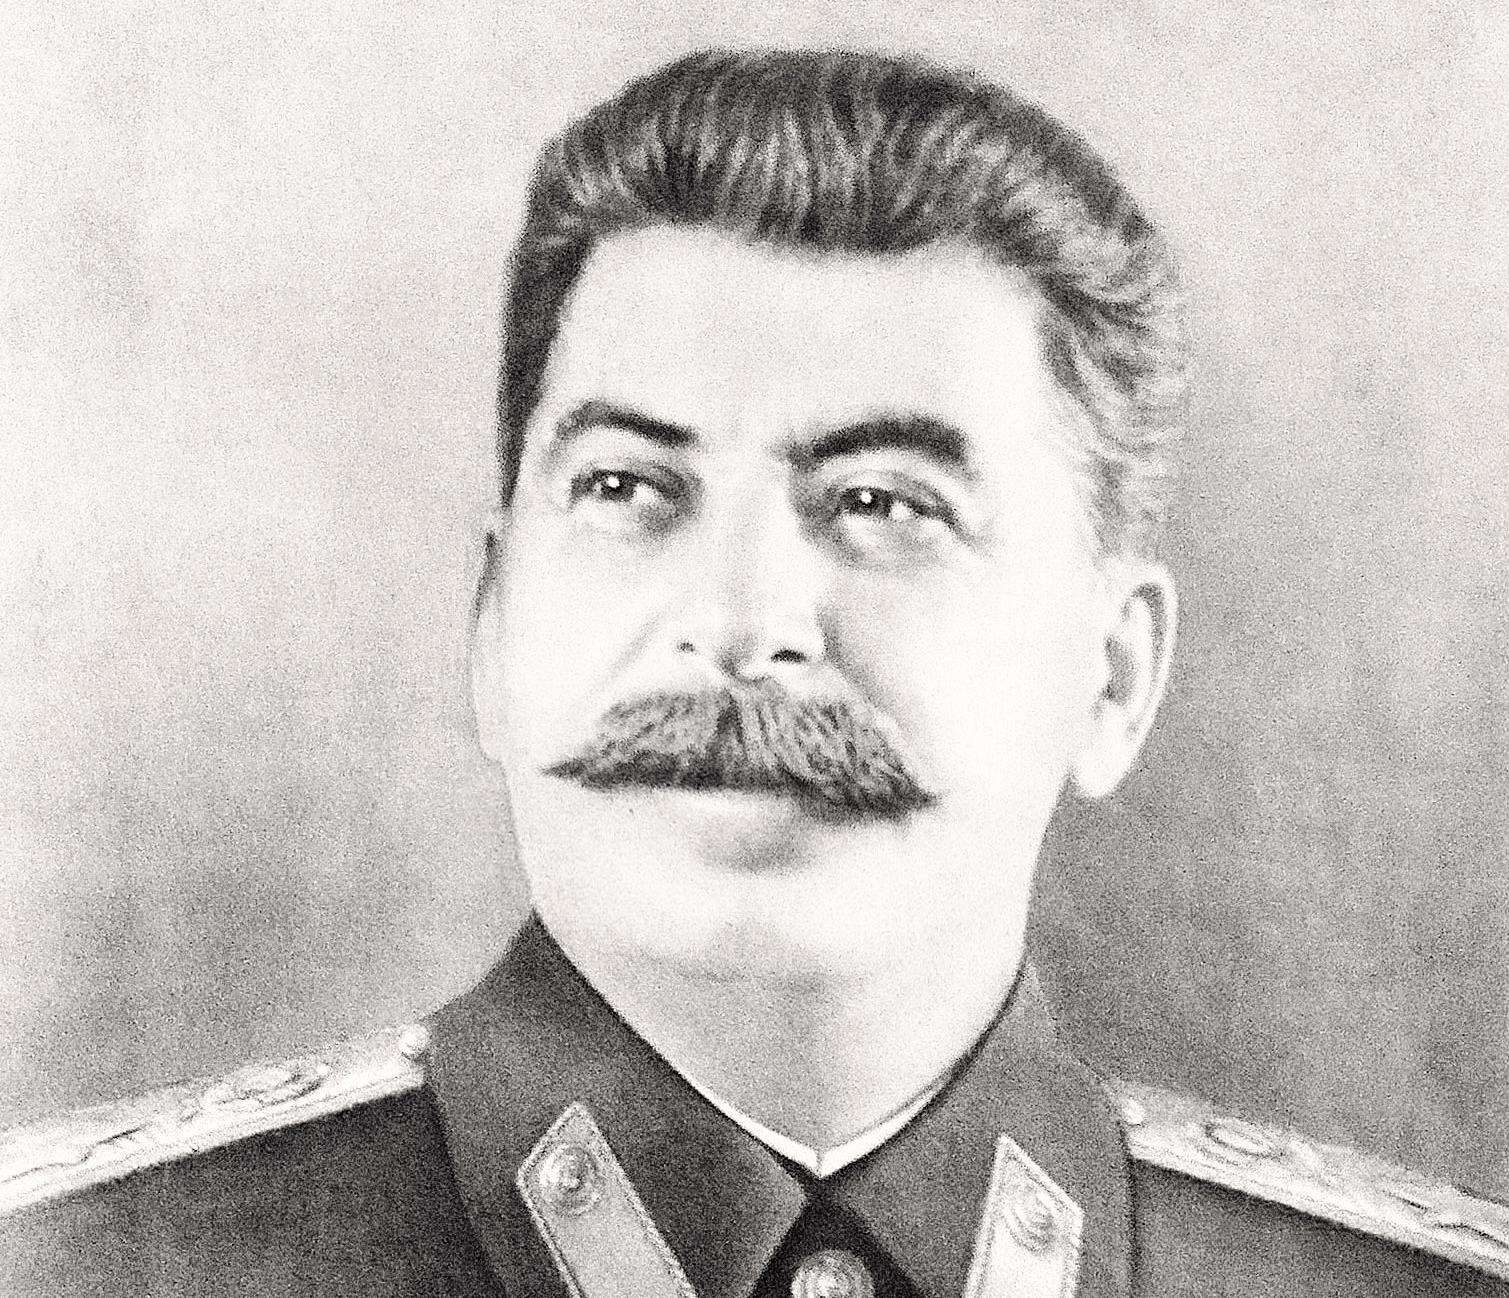 Soviet Union leader Stalin died in 1953